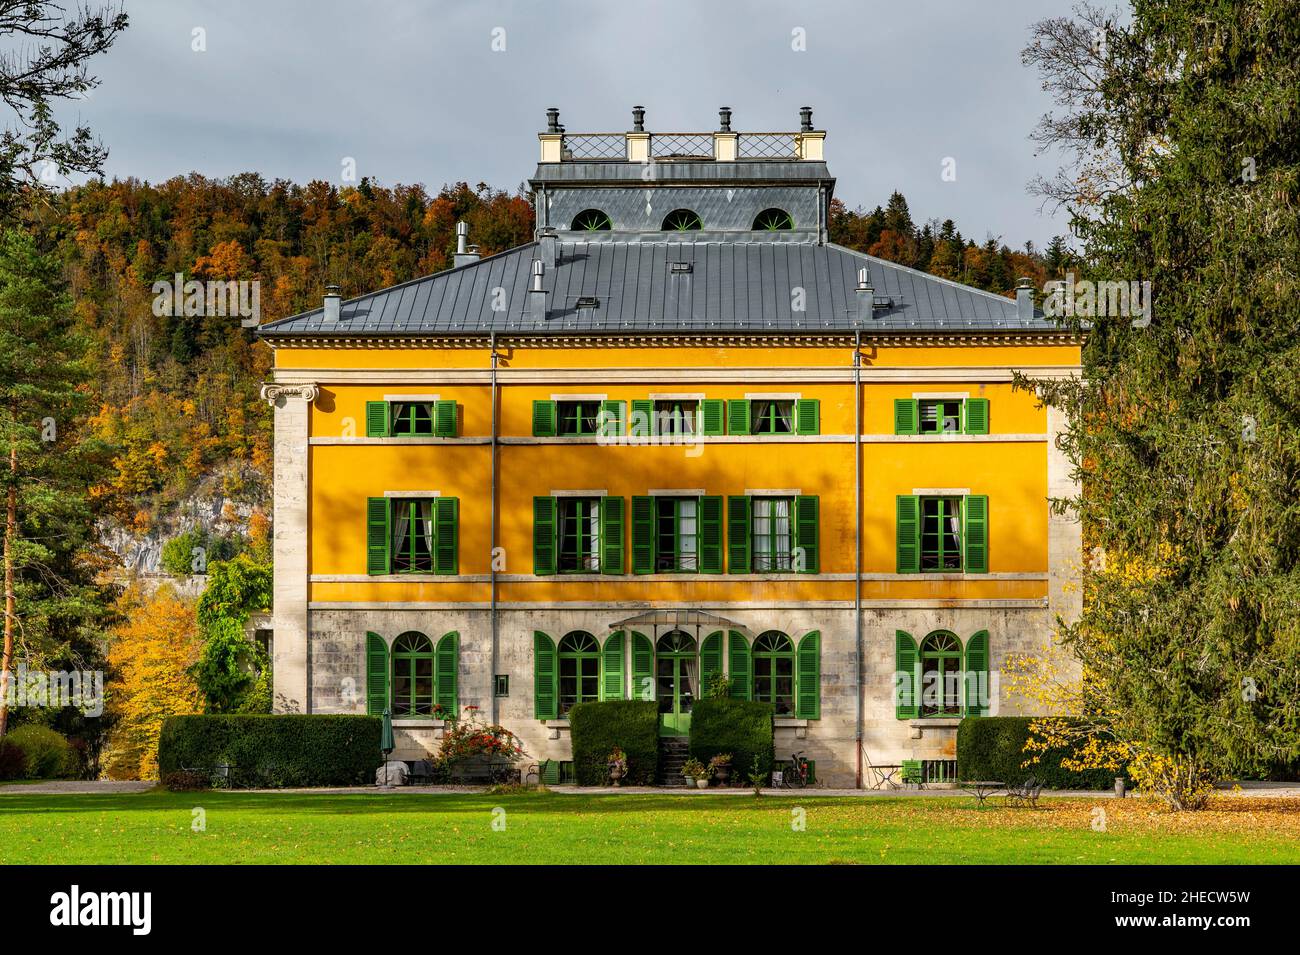 Frankreich; Jura, Regionaler Naturpark Oberjura; Syam die paladische Villa zeigt eine Architektur italienischen Einflusses, die perfekt inmitten des immensen Parks restauriert wurde Stockfoto